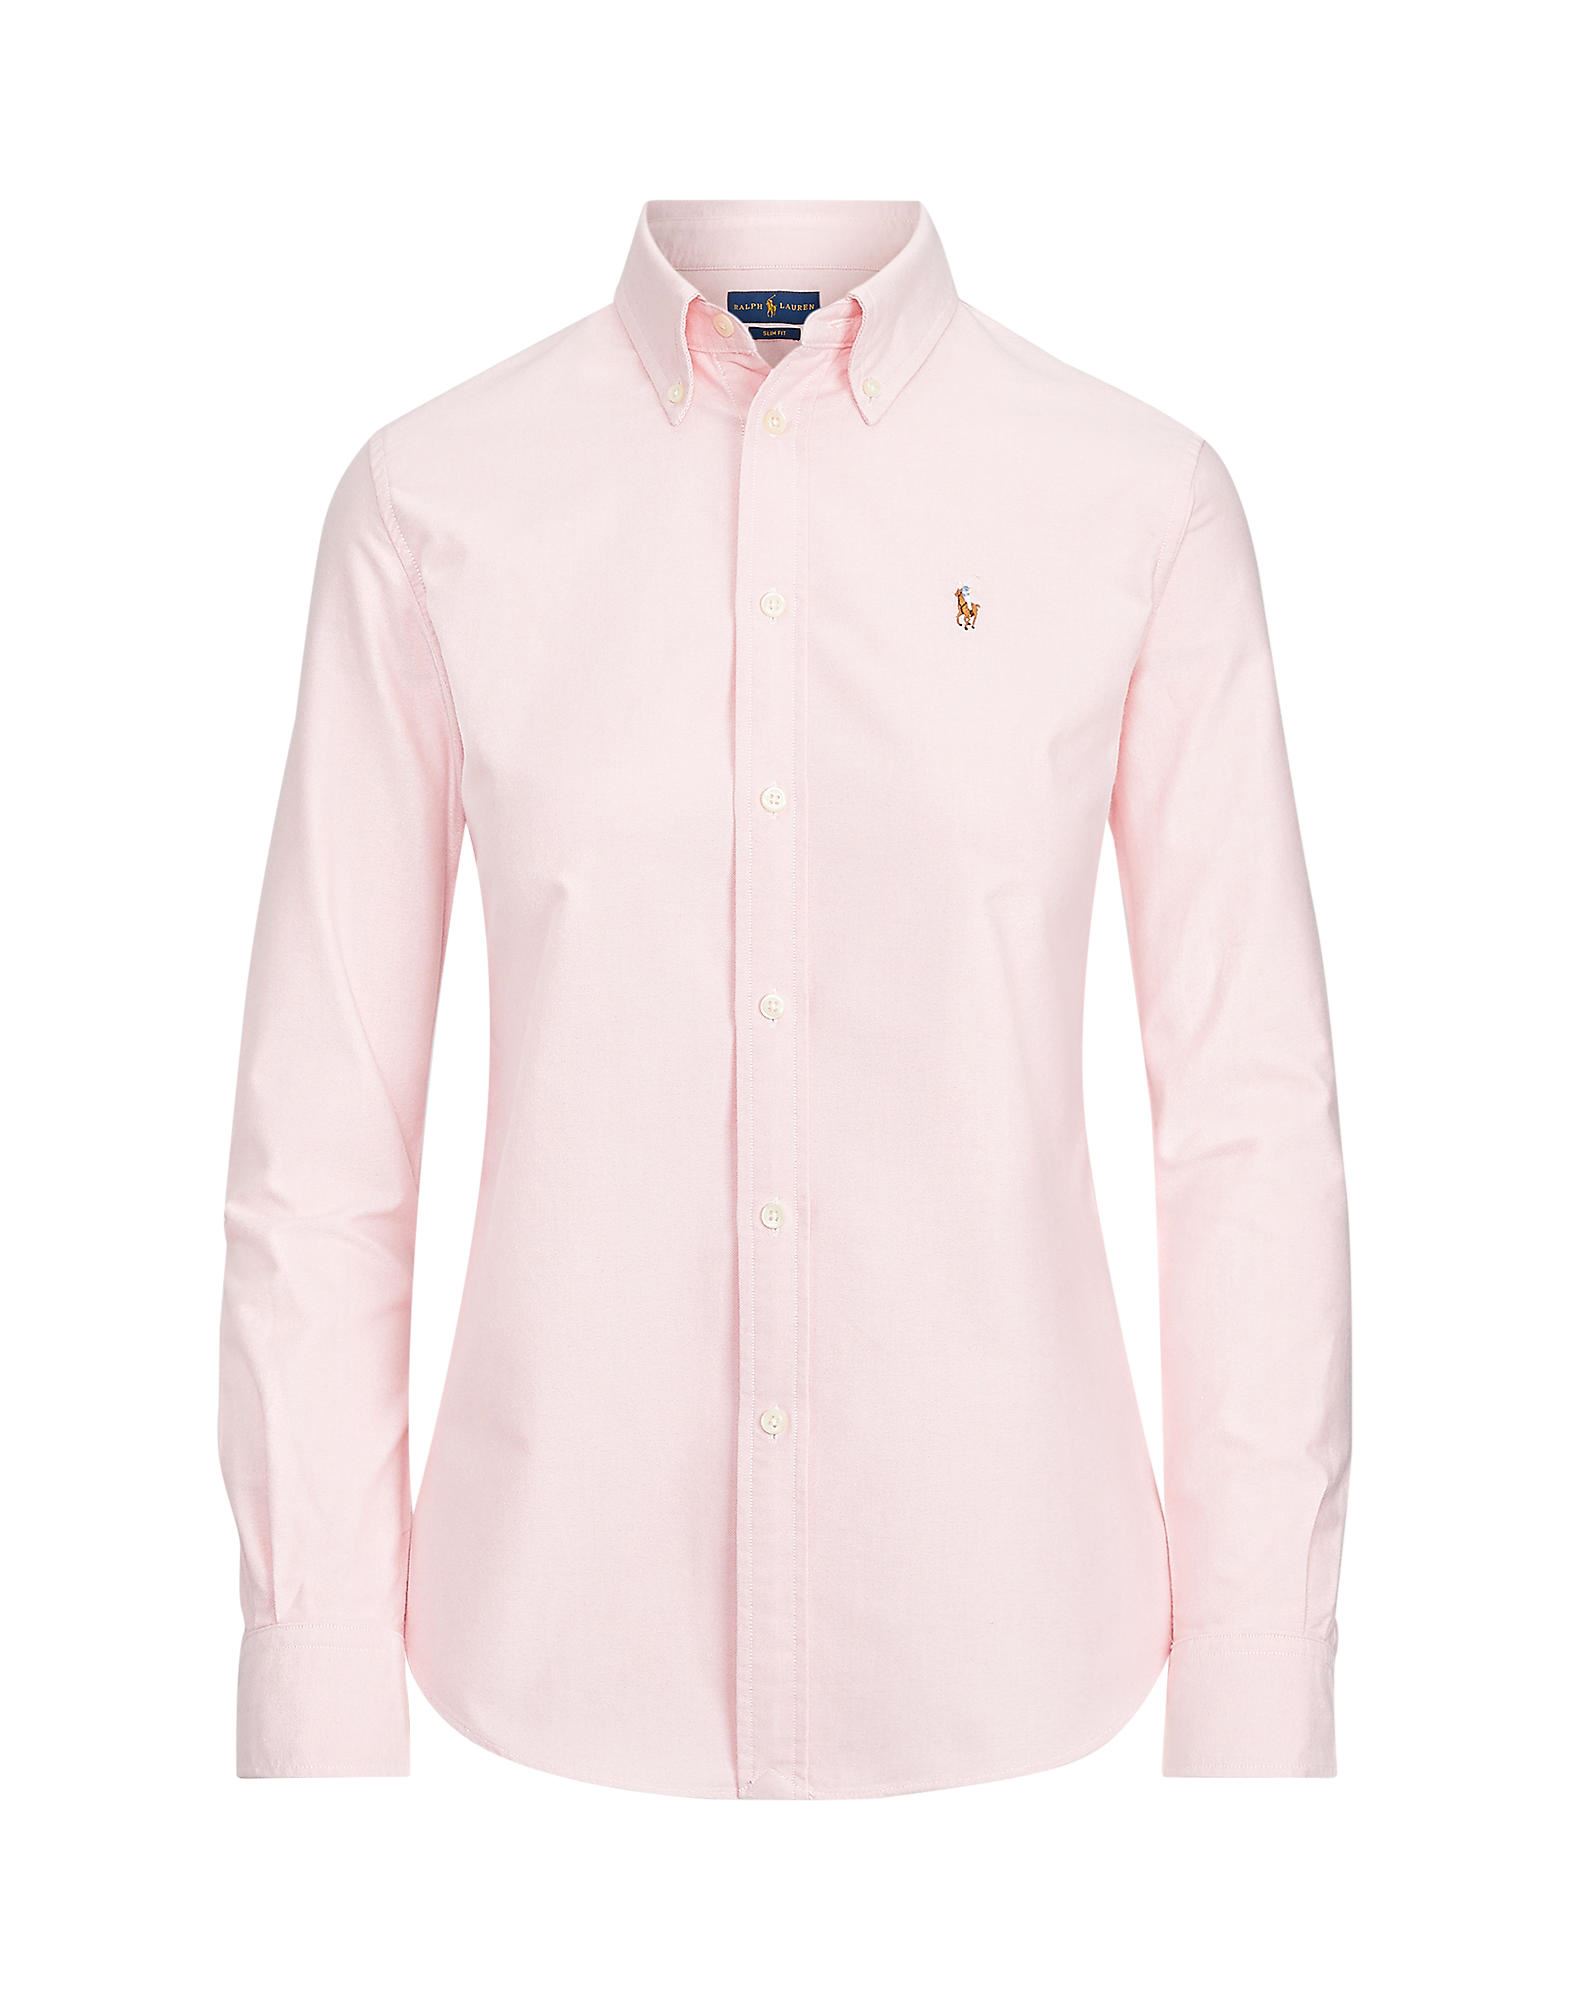 《送料無料》POLO RALPH LAUREN レディース シャツ ライトピンク XS コットン 100% Oxford Shirt